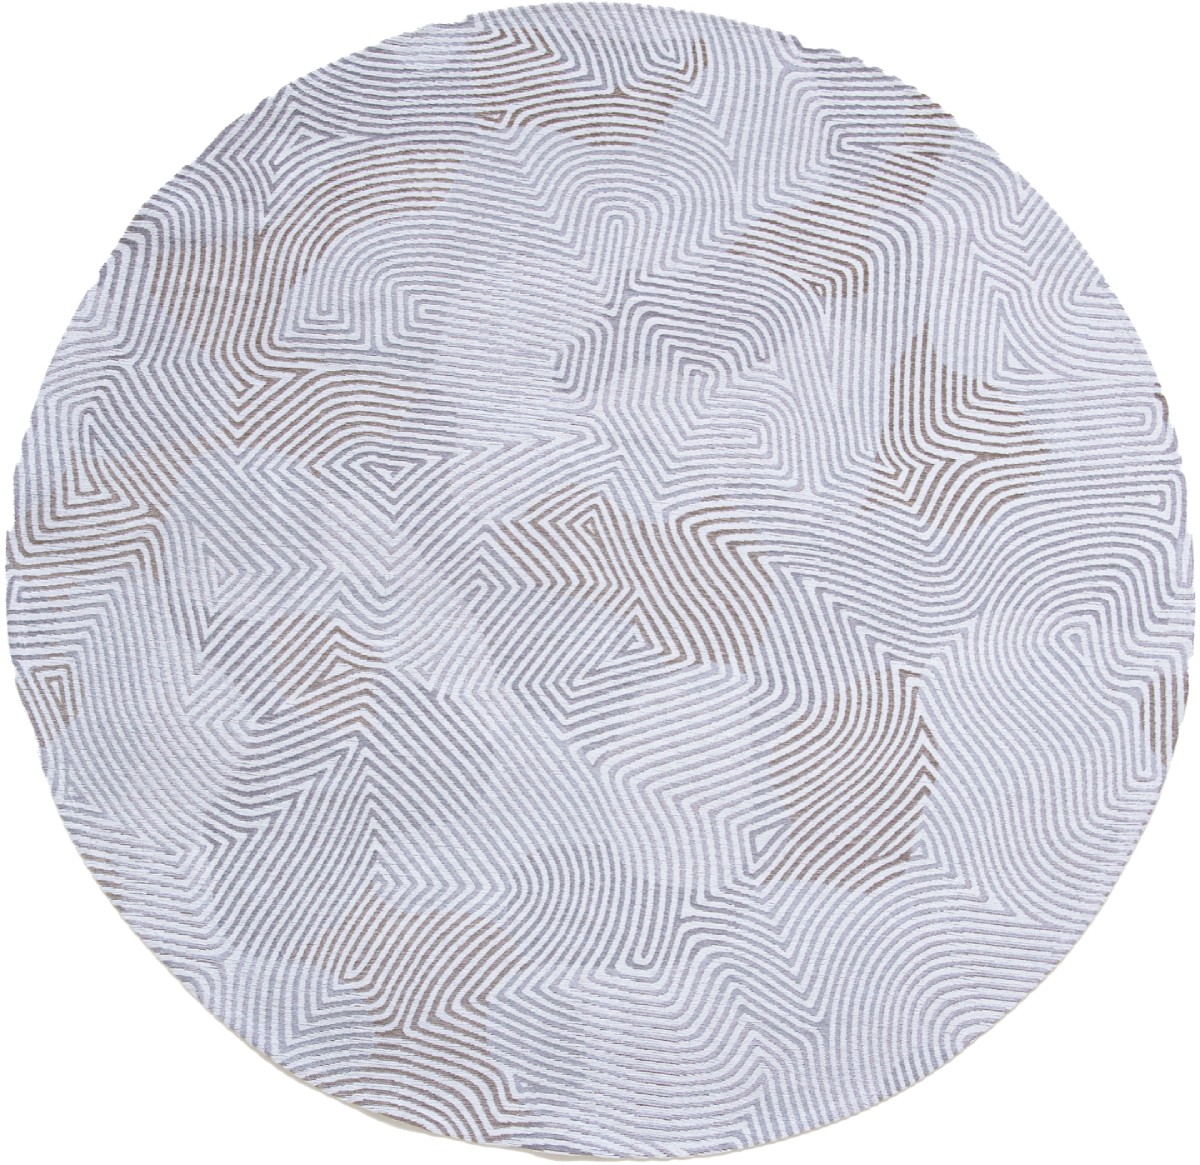 Oyster White Round Rug ☞ Size: Round 4' 7" (Ø 140 cm)